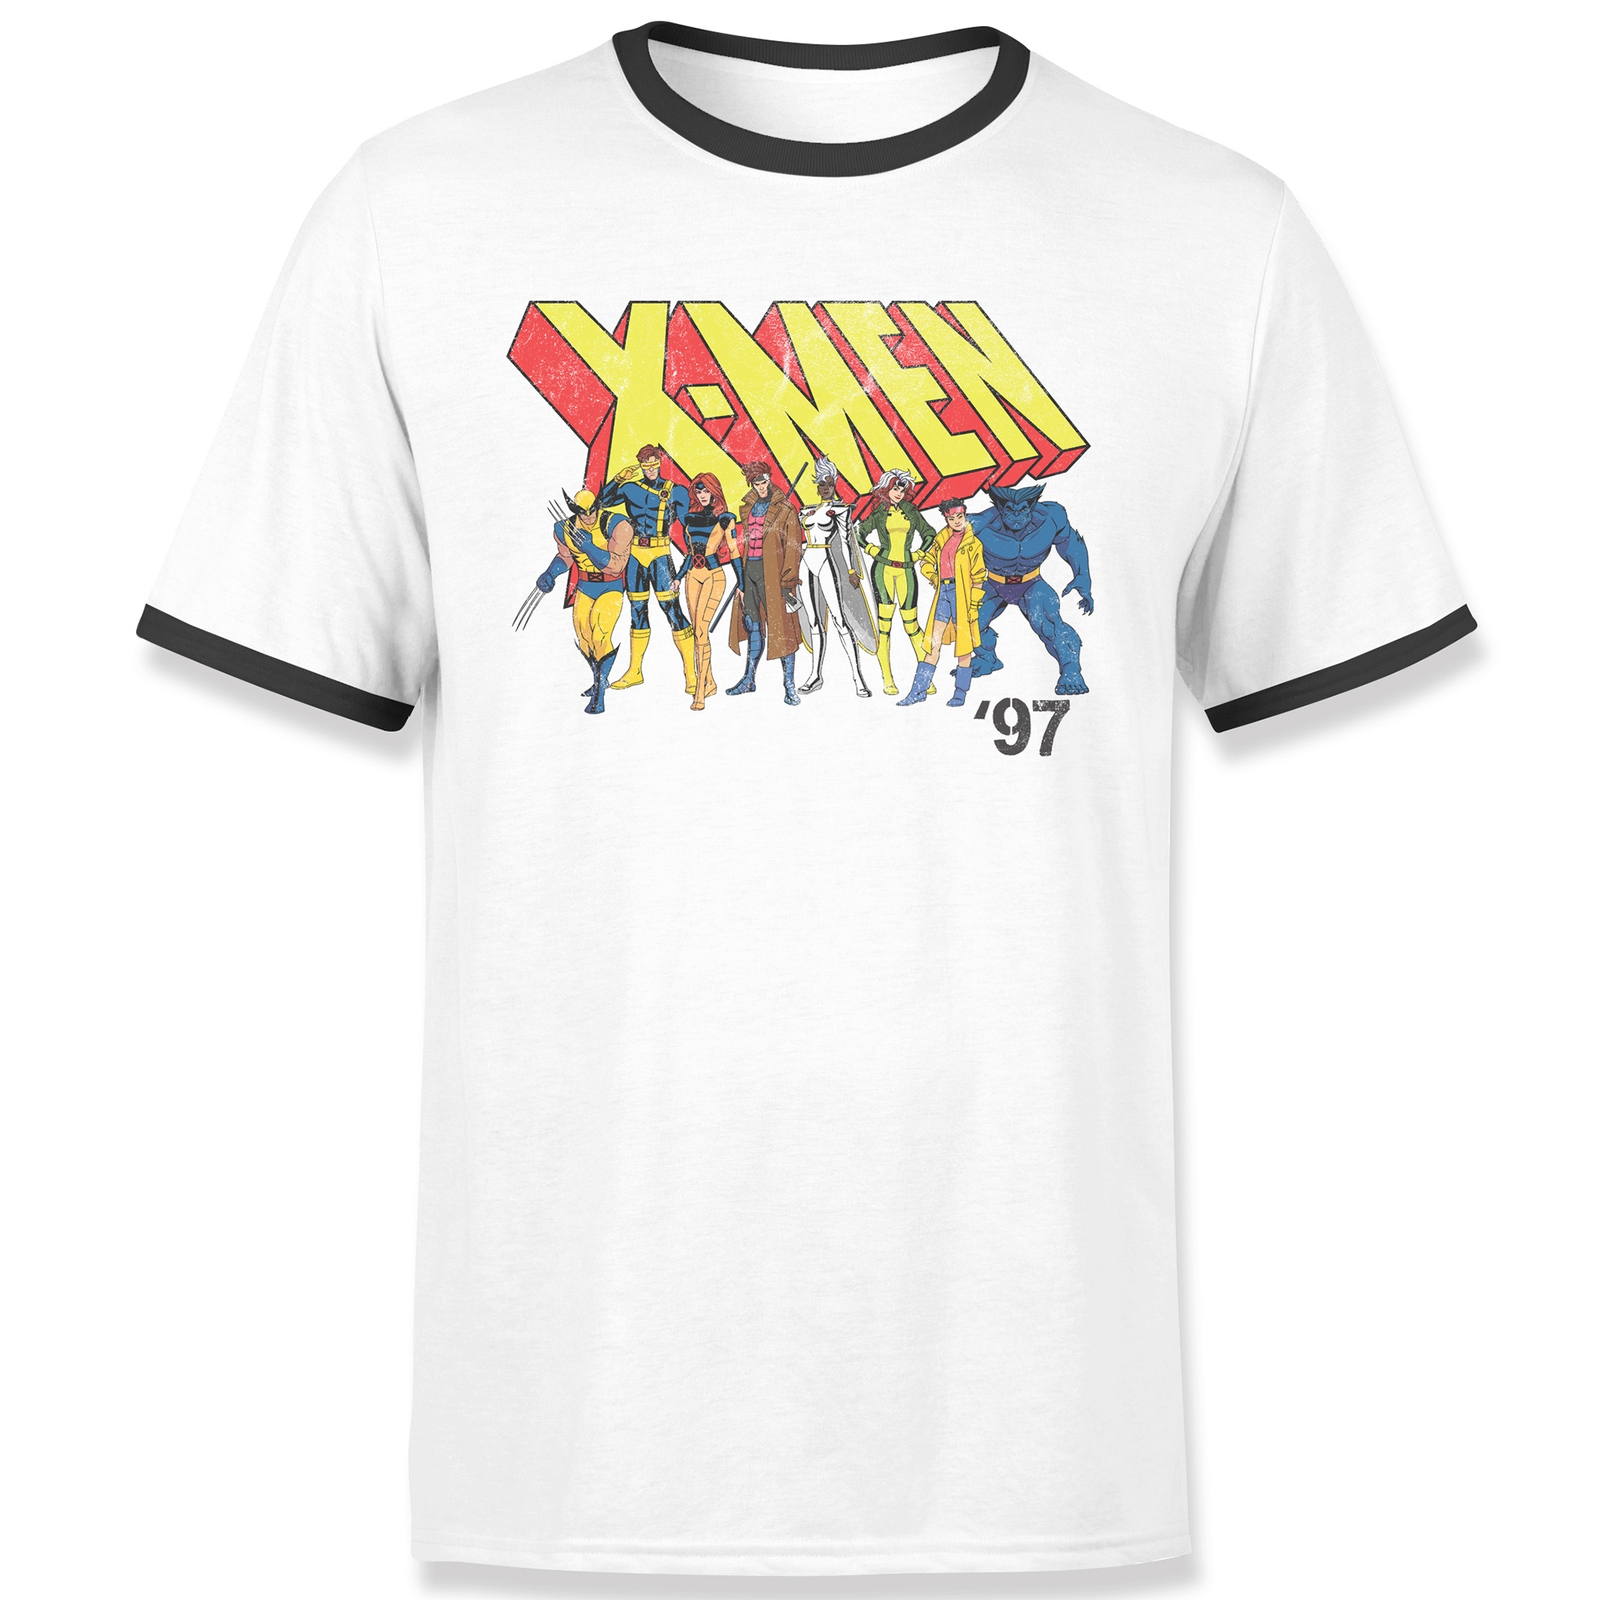 X-Men Unite Unisex Ringer T-Shirt - White/Black - M